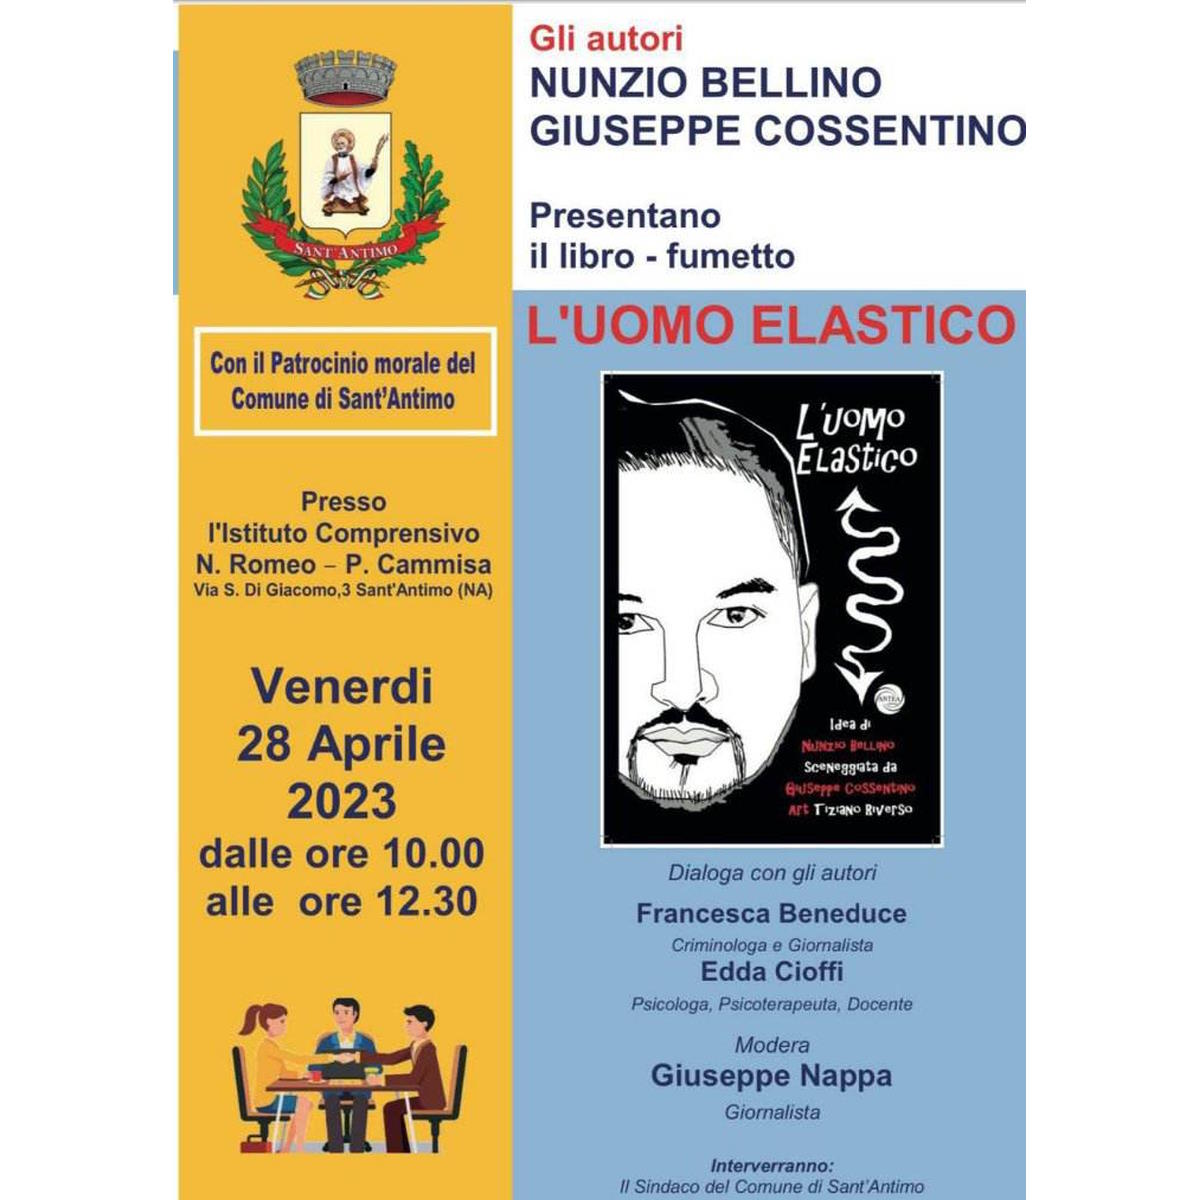 Venerdì 28 aprile alle ore 10.00 Nunzio Bellino e Giuseppe Cossentino presenteranno alla scuola Nicola Romeo a Sant’Antimo